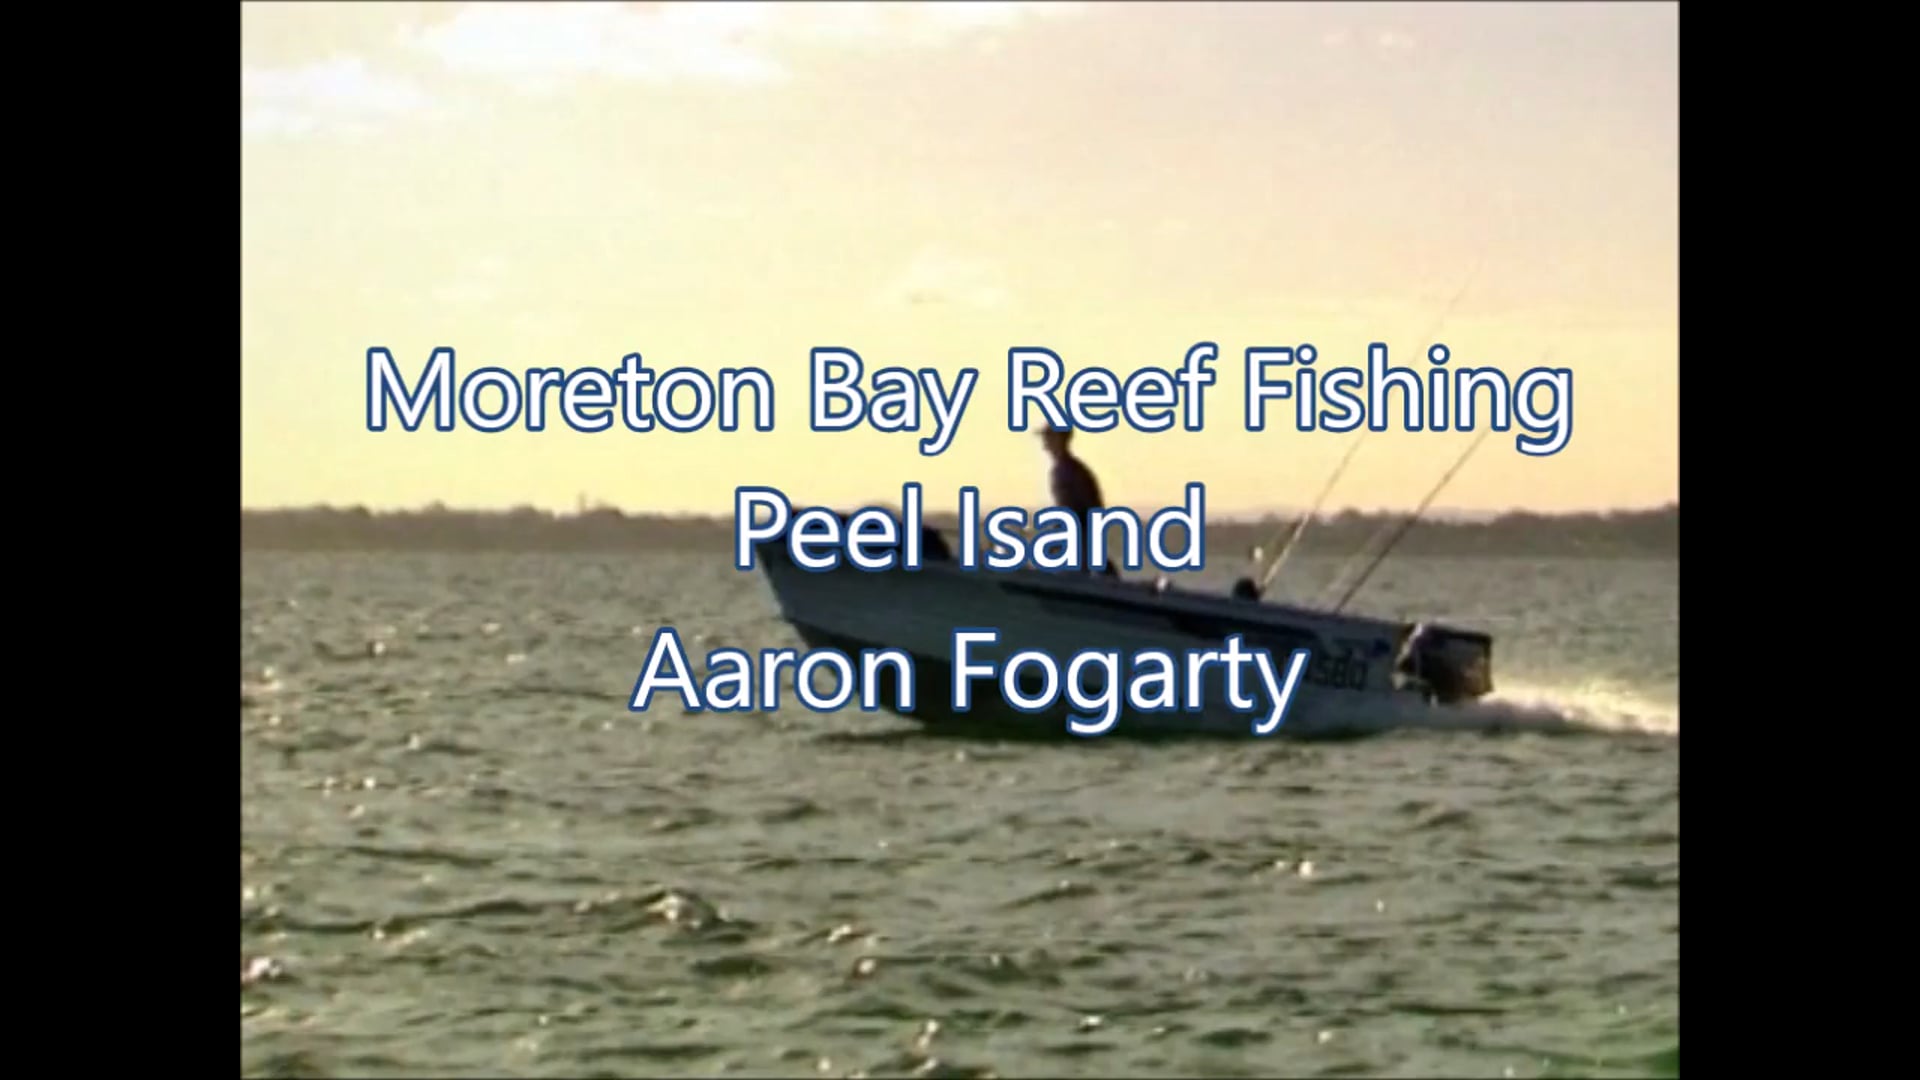 Moreton Bay Reef Fishing – Peel Island Aaron Fogarty